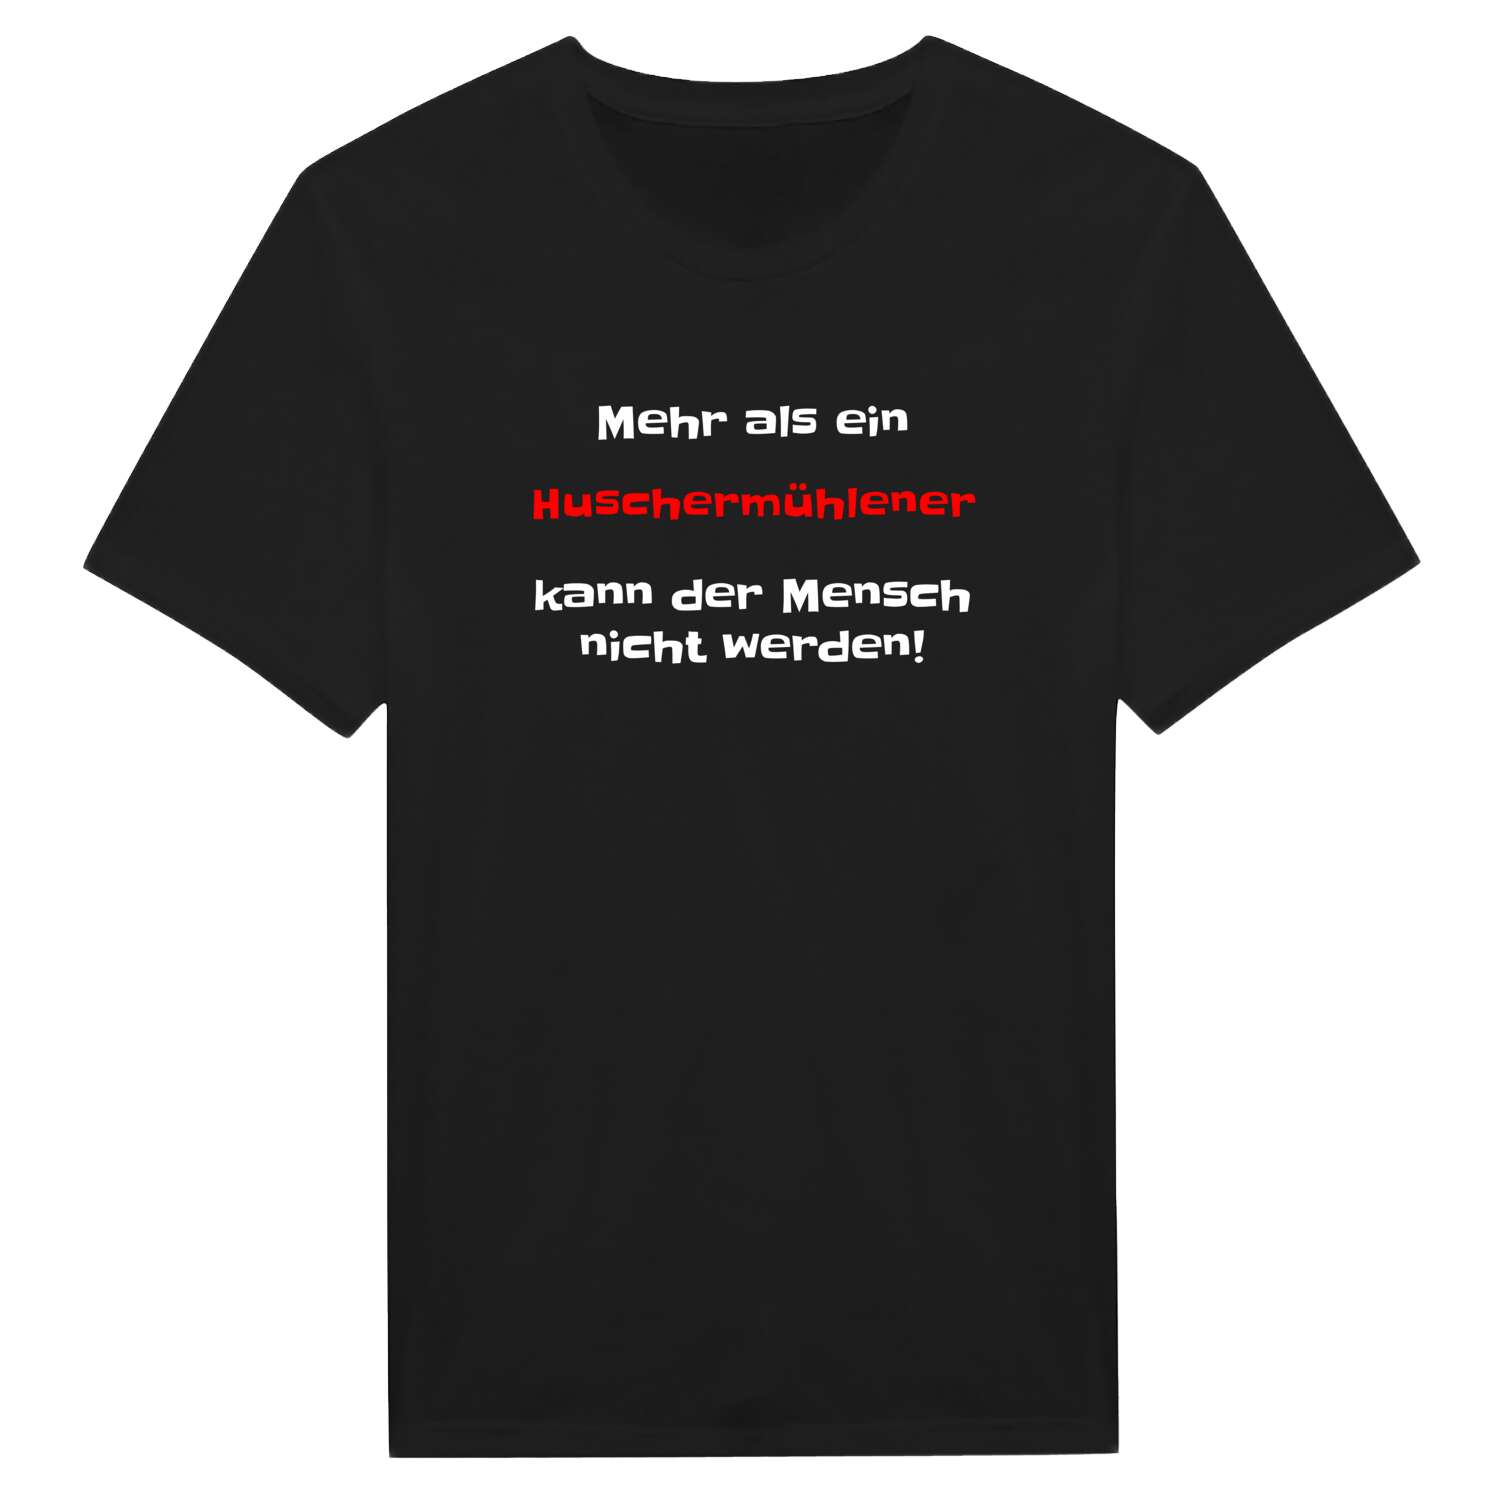 Huschermühle T-Shirt »Mehr als ein«